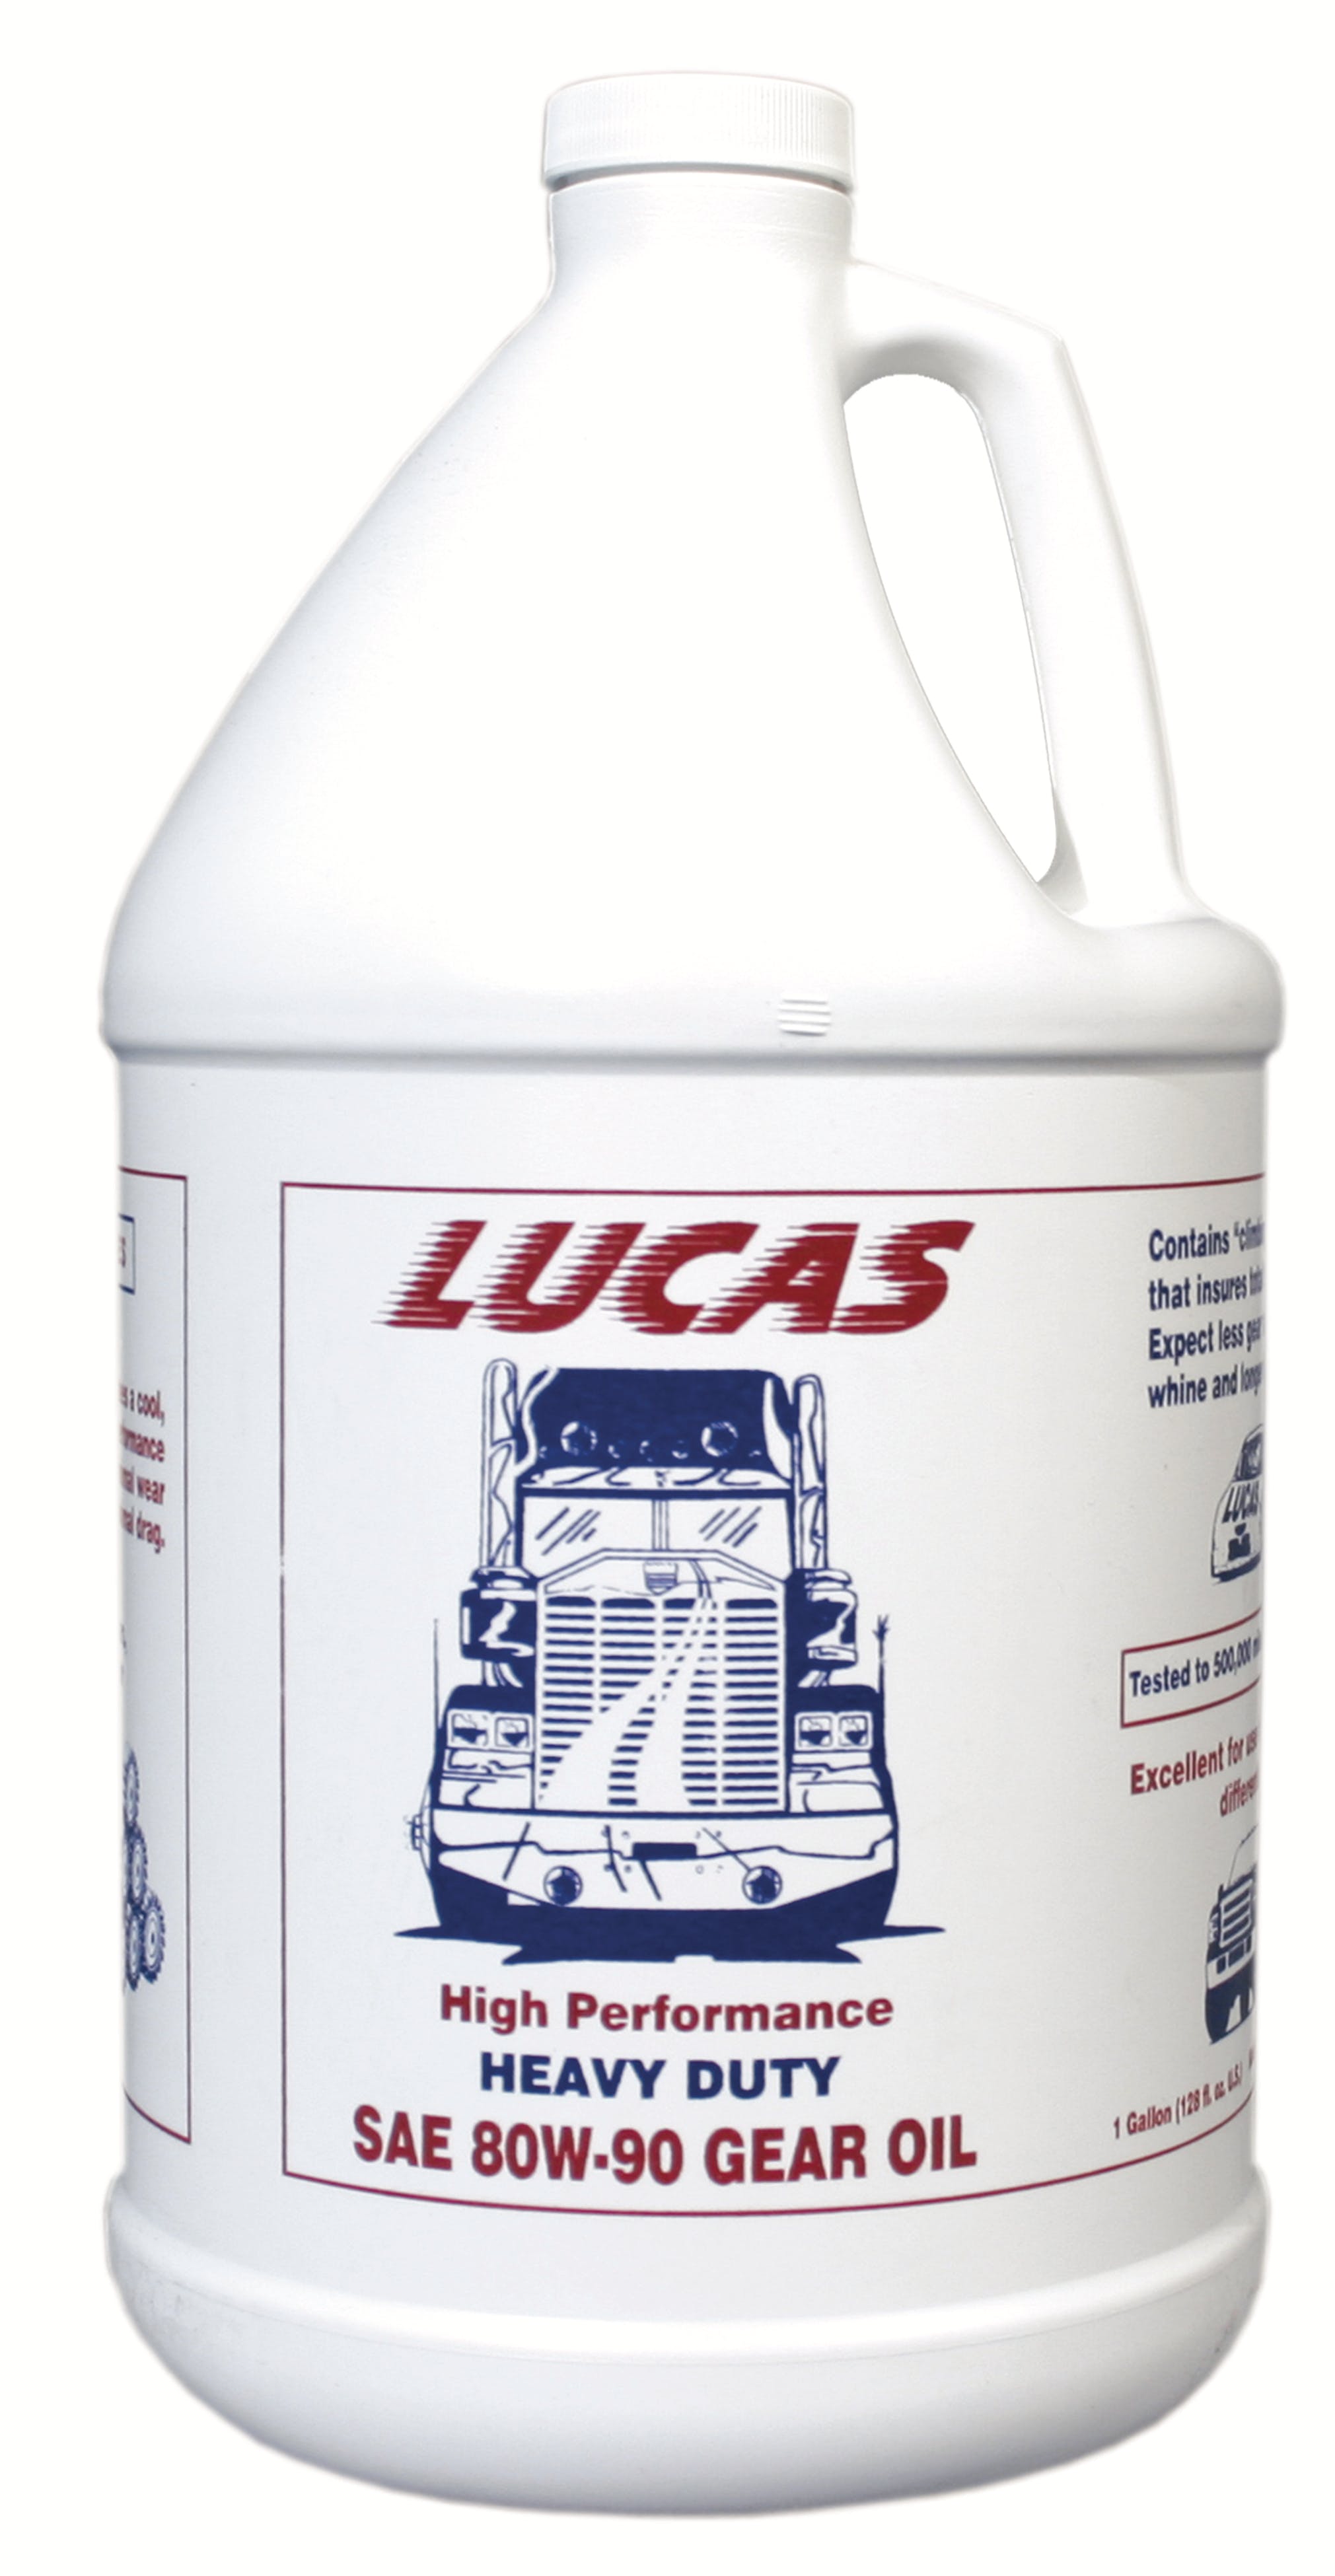 Lucas OIL SAE 80W-90 Heavy Duty Gear Oil (1 GA) 20046